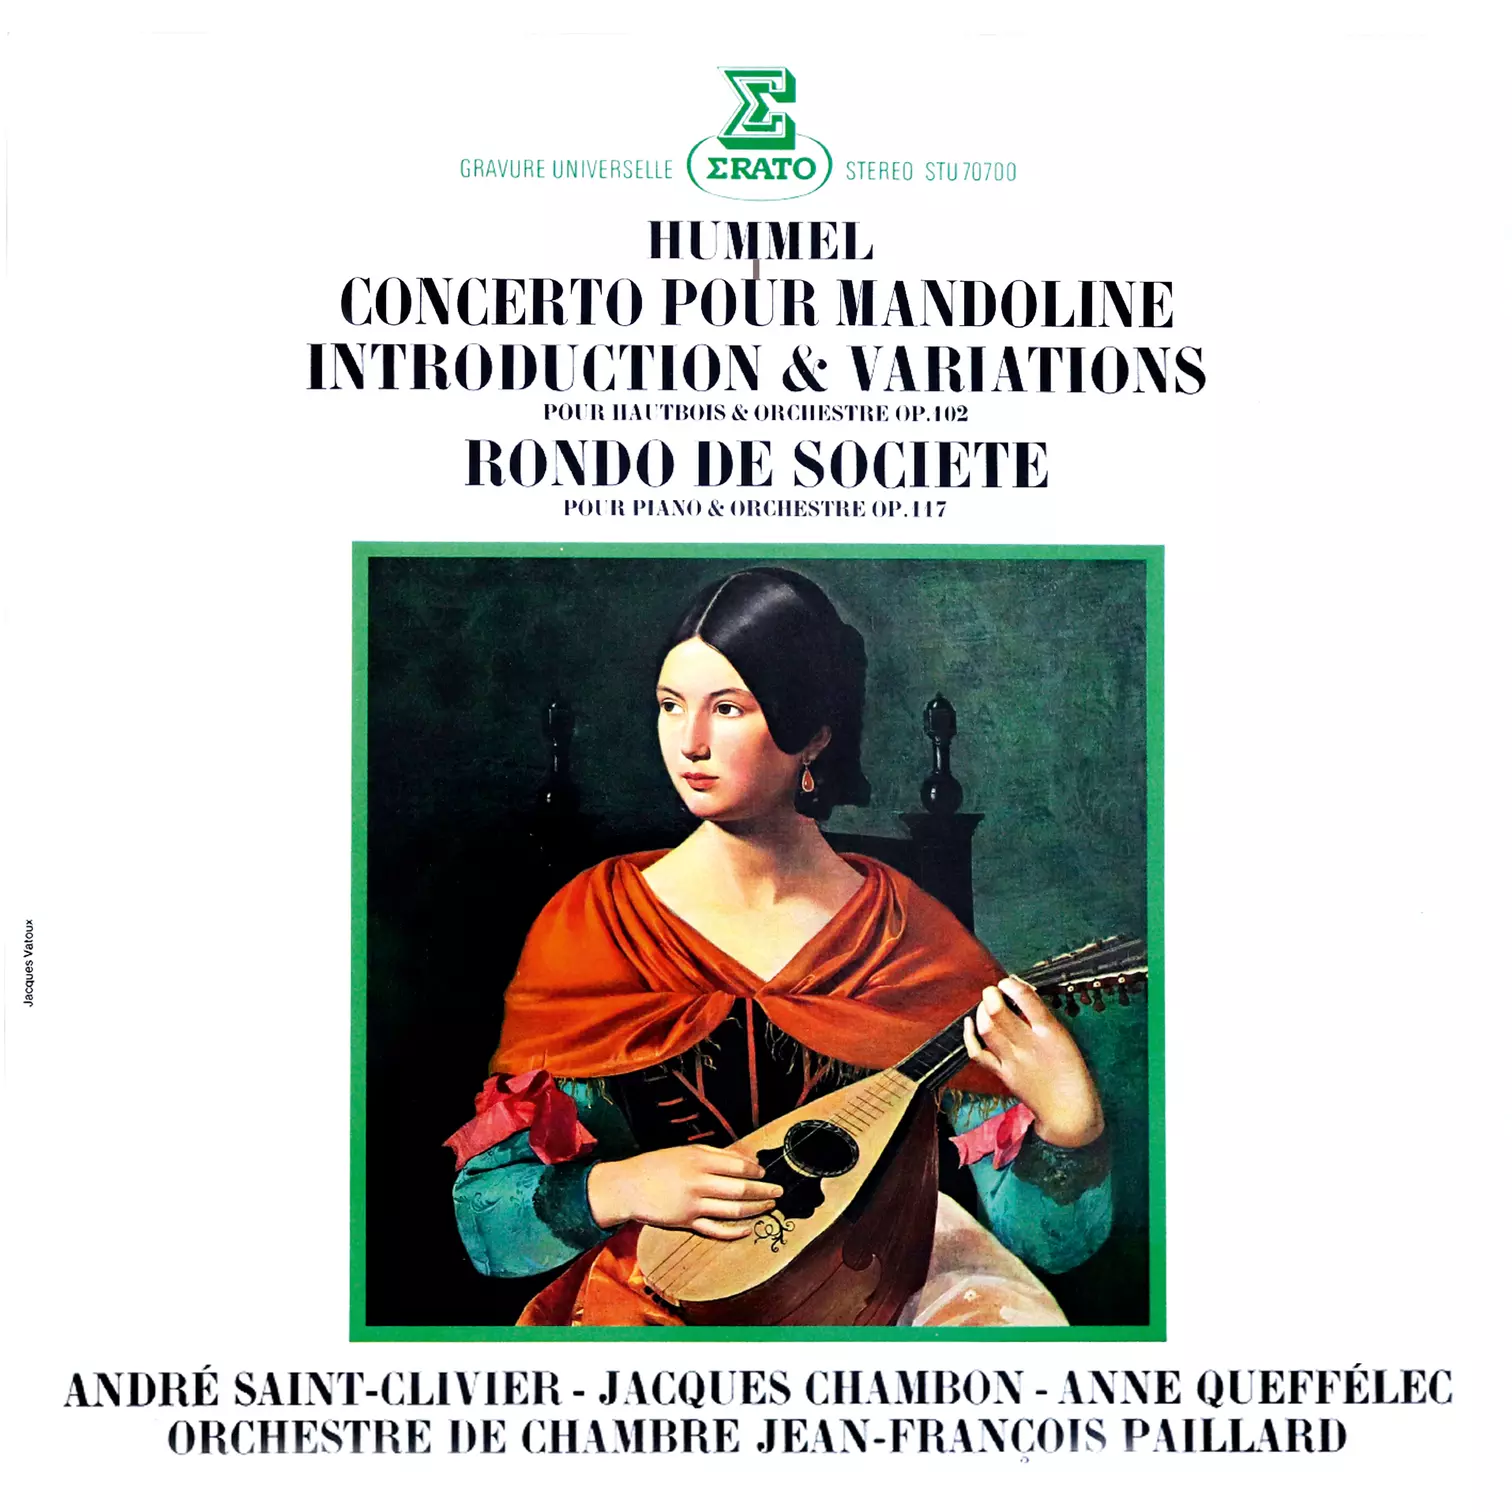 Hummel: Concerto pour mandoline, Introduction et variations pour hautbois et orchestre & Rondo de société